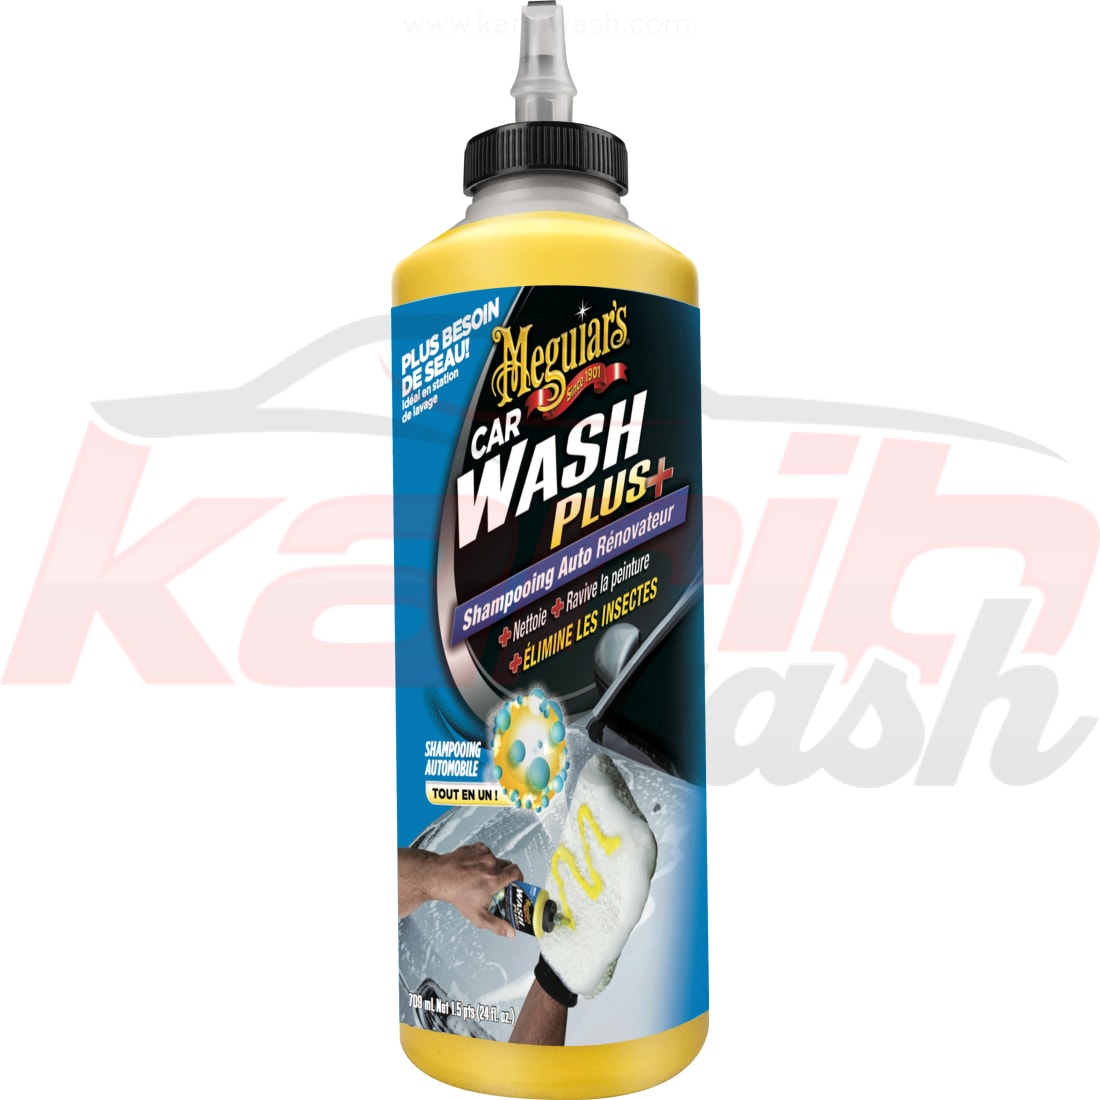 Car Wash Plus - MEGUIAR'S - KARIBWASH